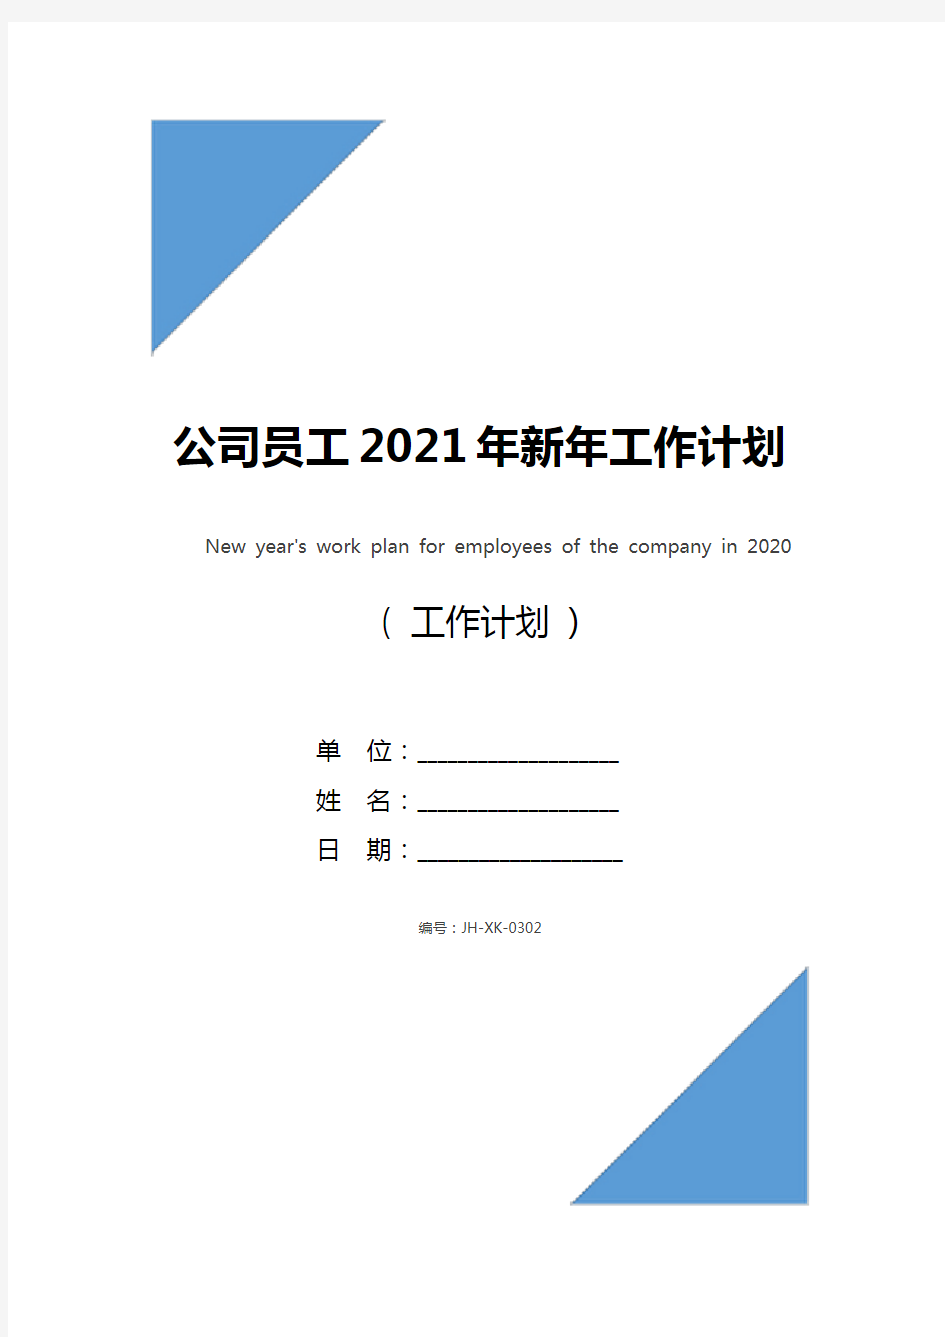 公司员工2021年新年工作计划(最新版)